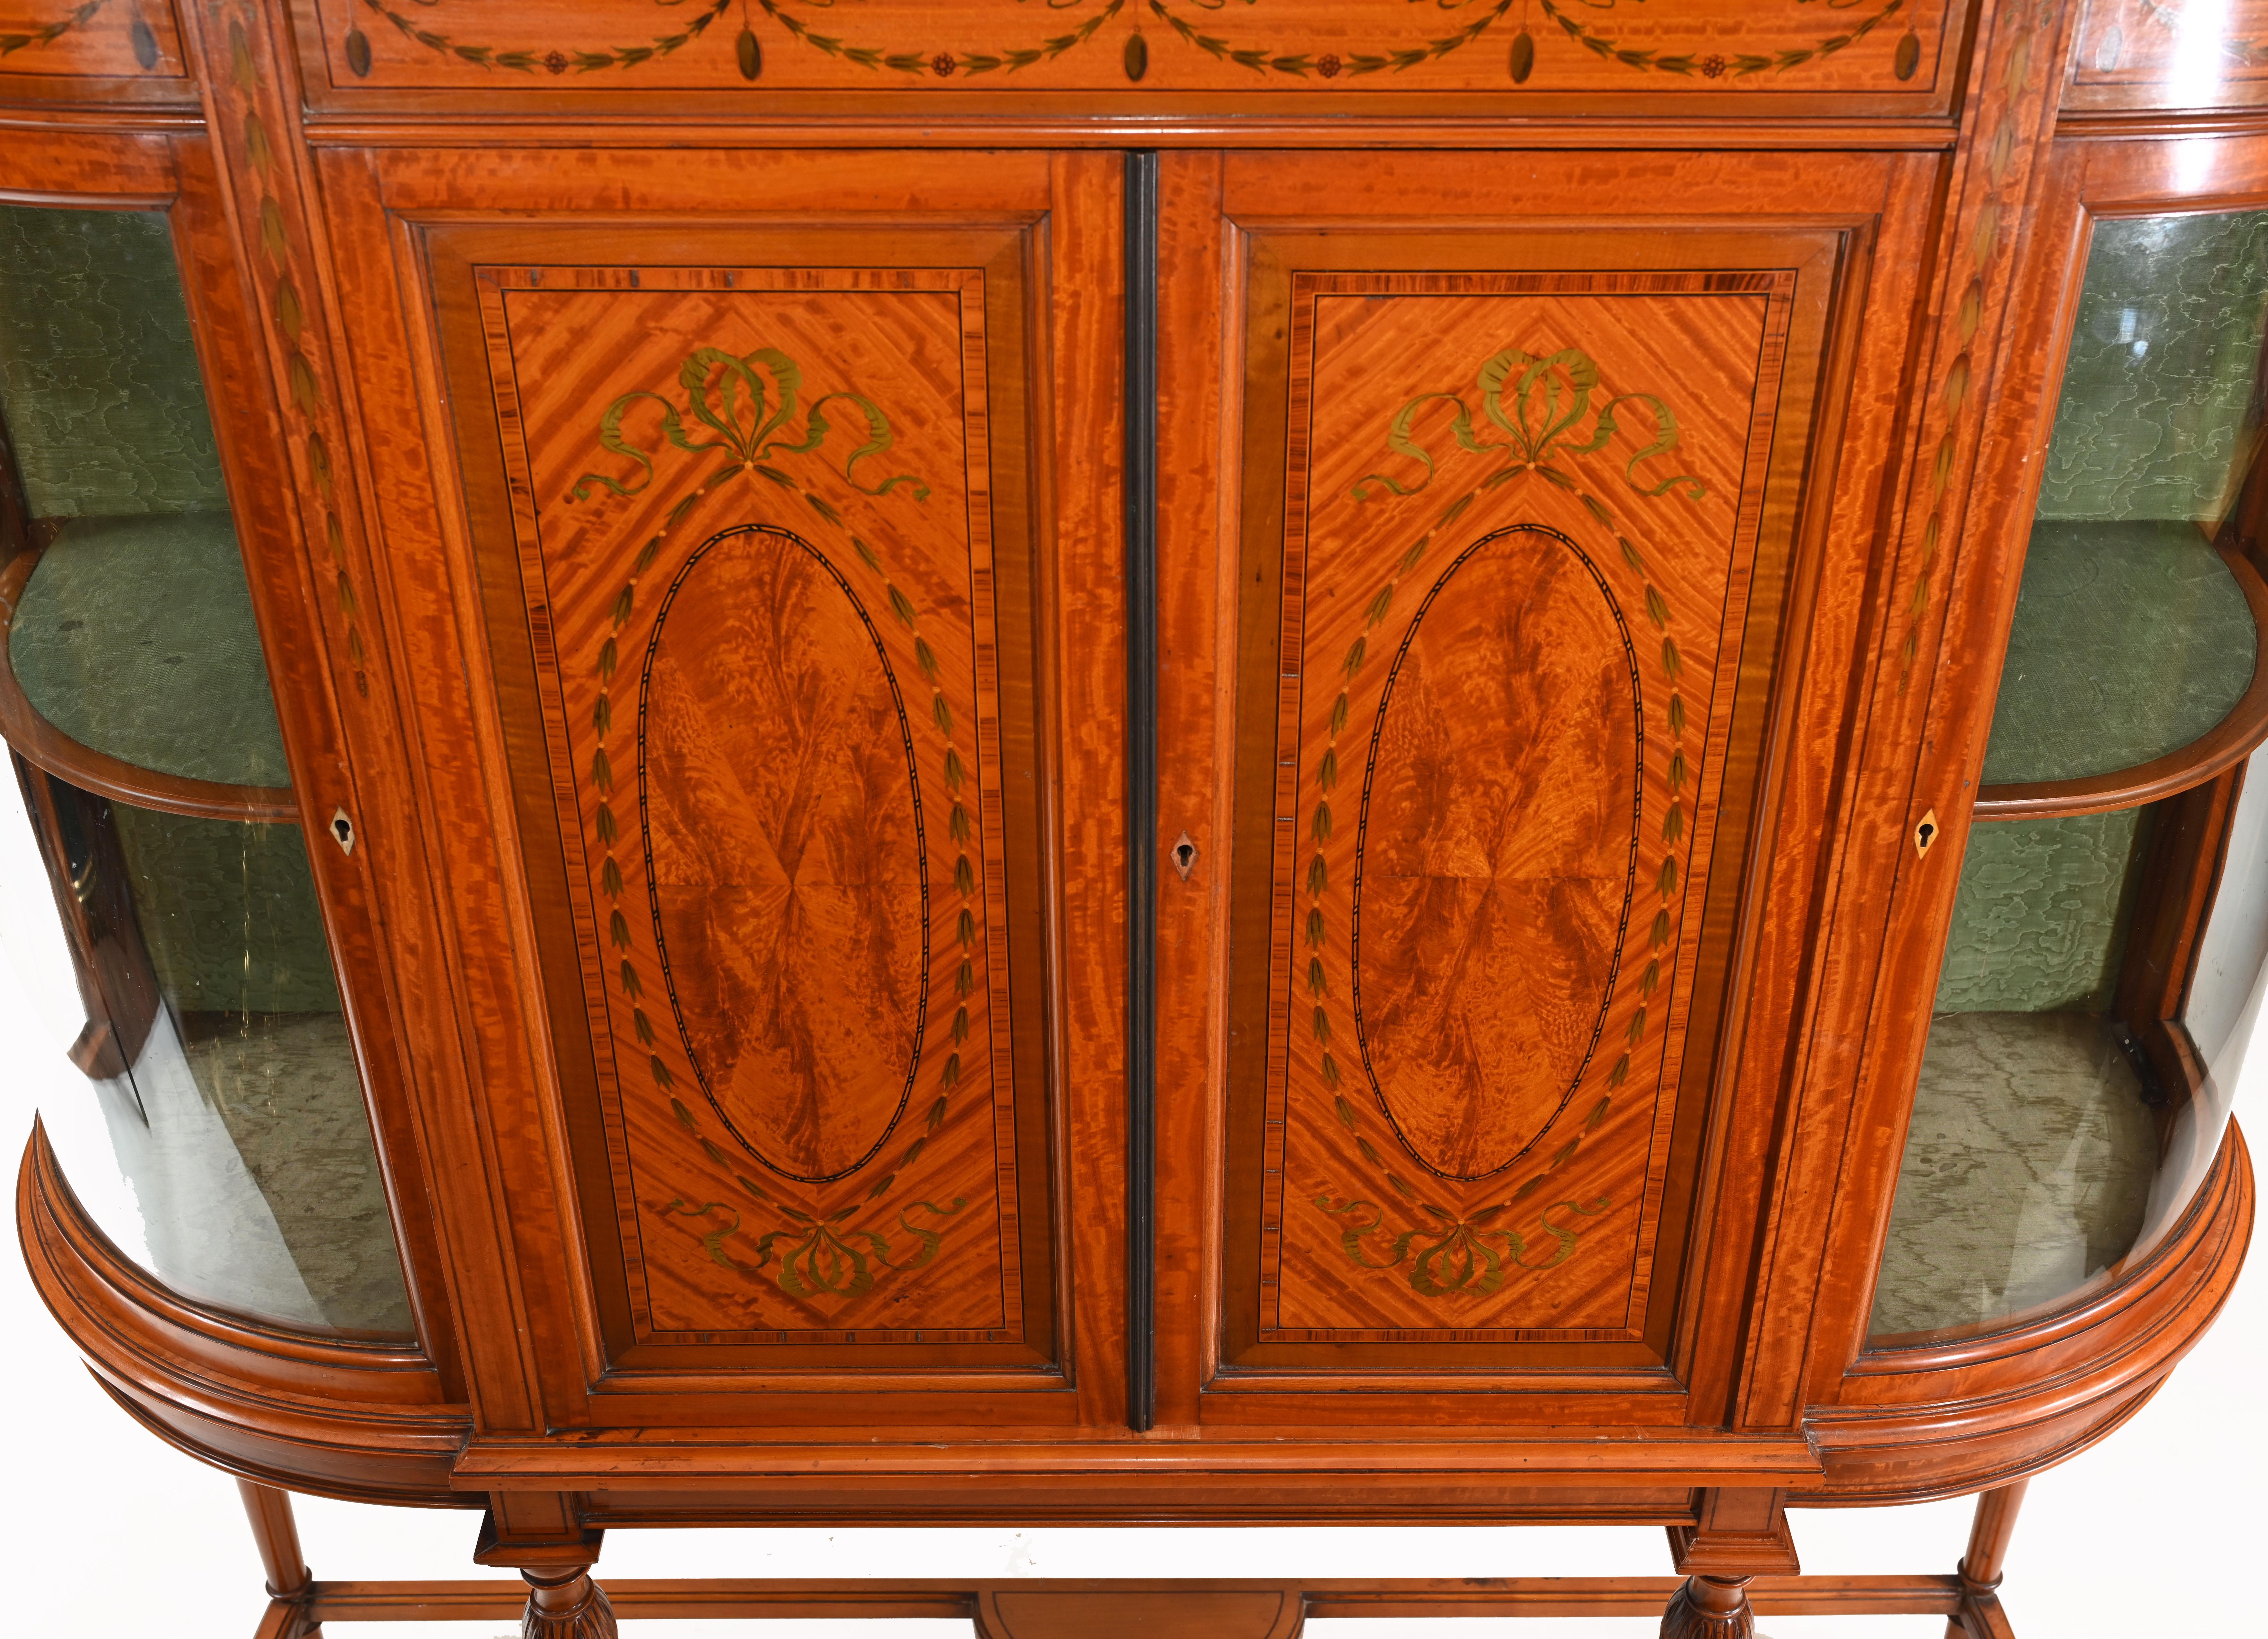 Très belle bibliothèque ou armoire ancienne en bois de satin
La pièce est estampillée par les fabricants Maple & Co (voir photo rapprochée)
Maple & Co. était un fabricant britannique de meubles et de tissus d'ameublement fondé en 1841, qui a connu